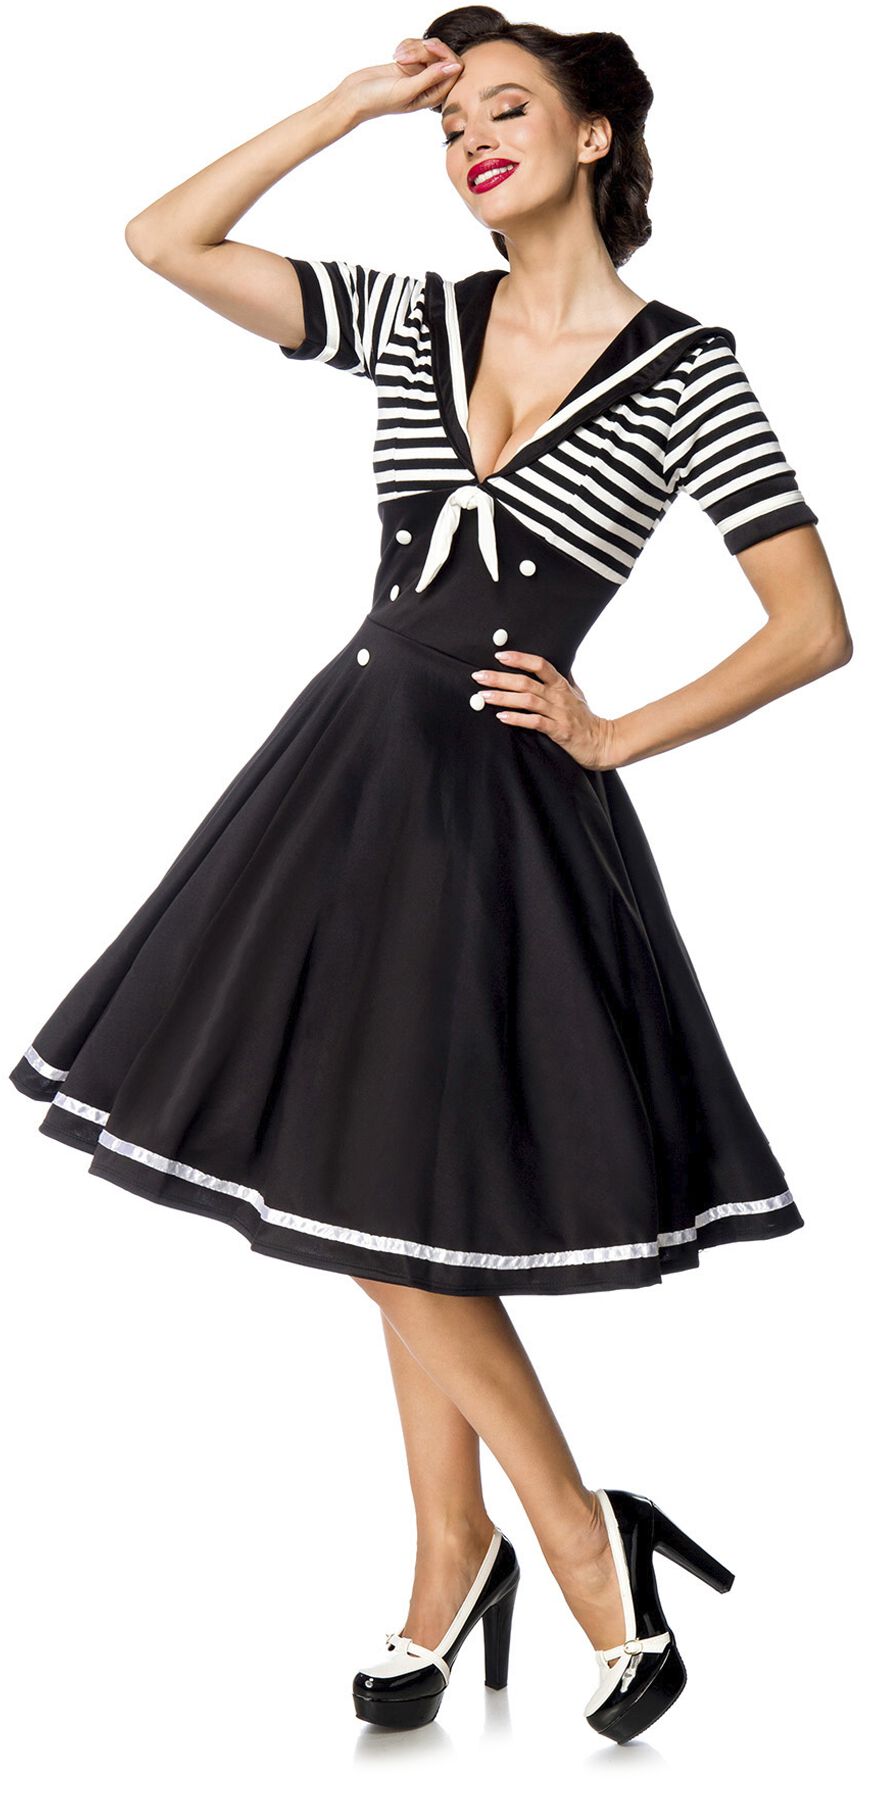 Belsira - Rockabilly Kleid knielang - Swing-Kleid im Marinelook - S bis 4XL - für Damen - Größe L - schwarz/weiß